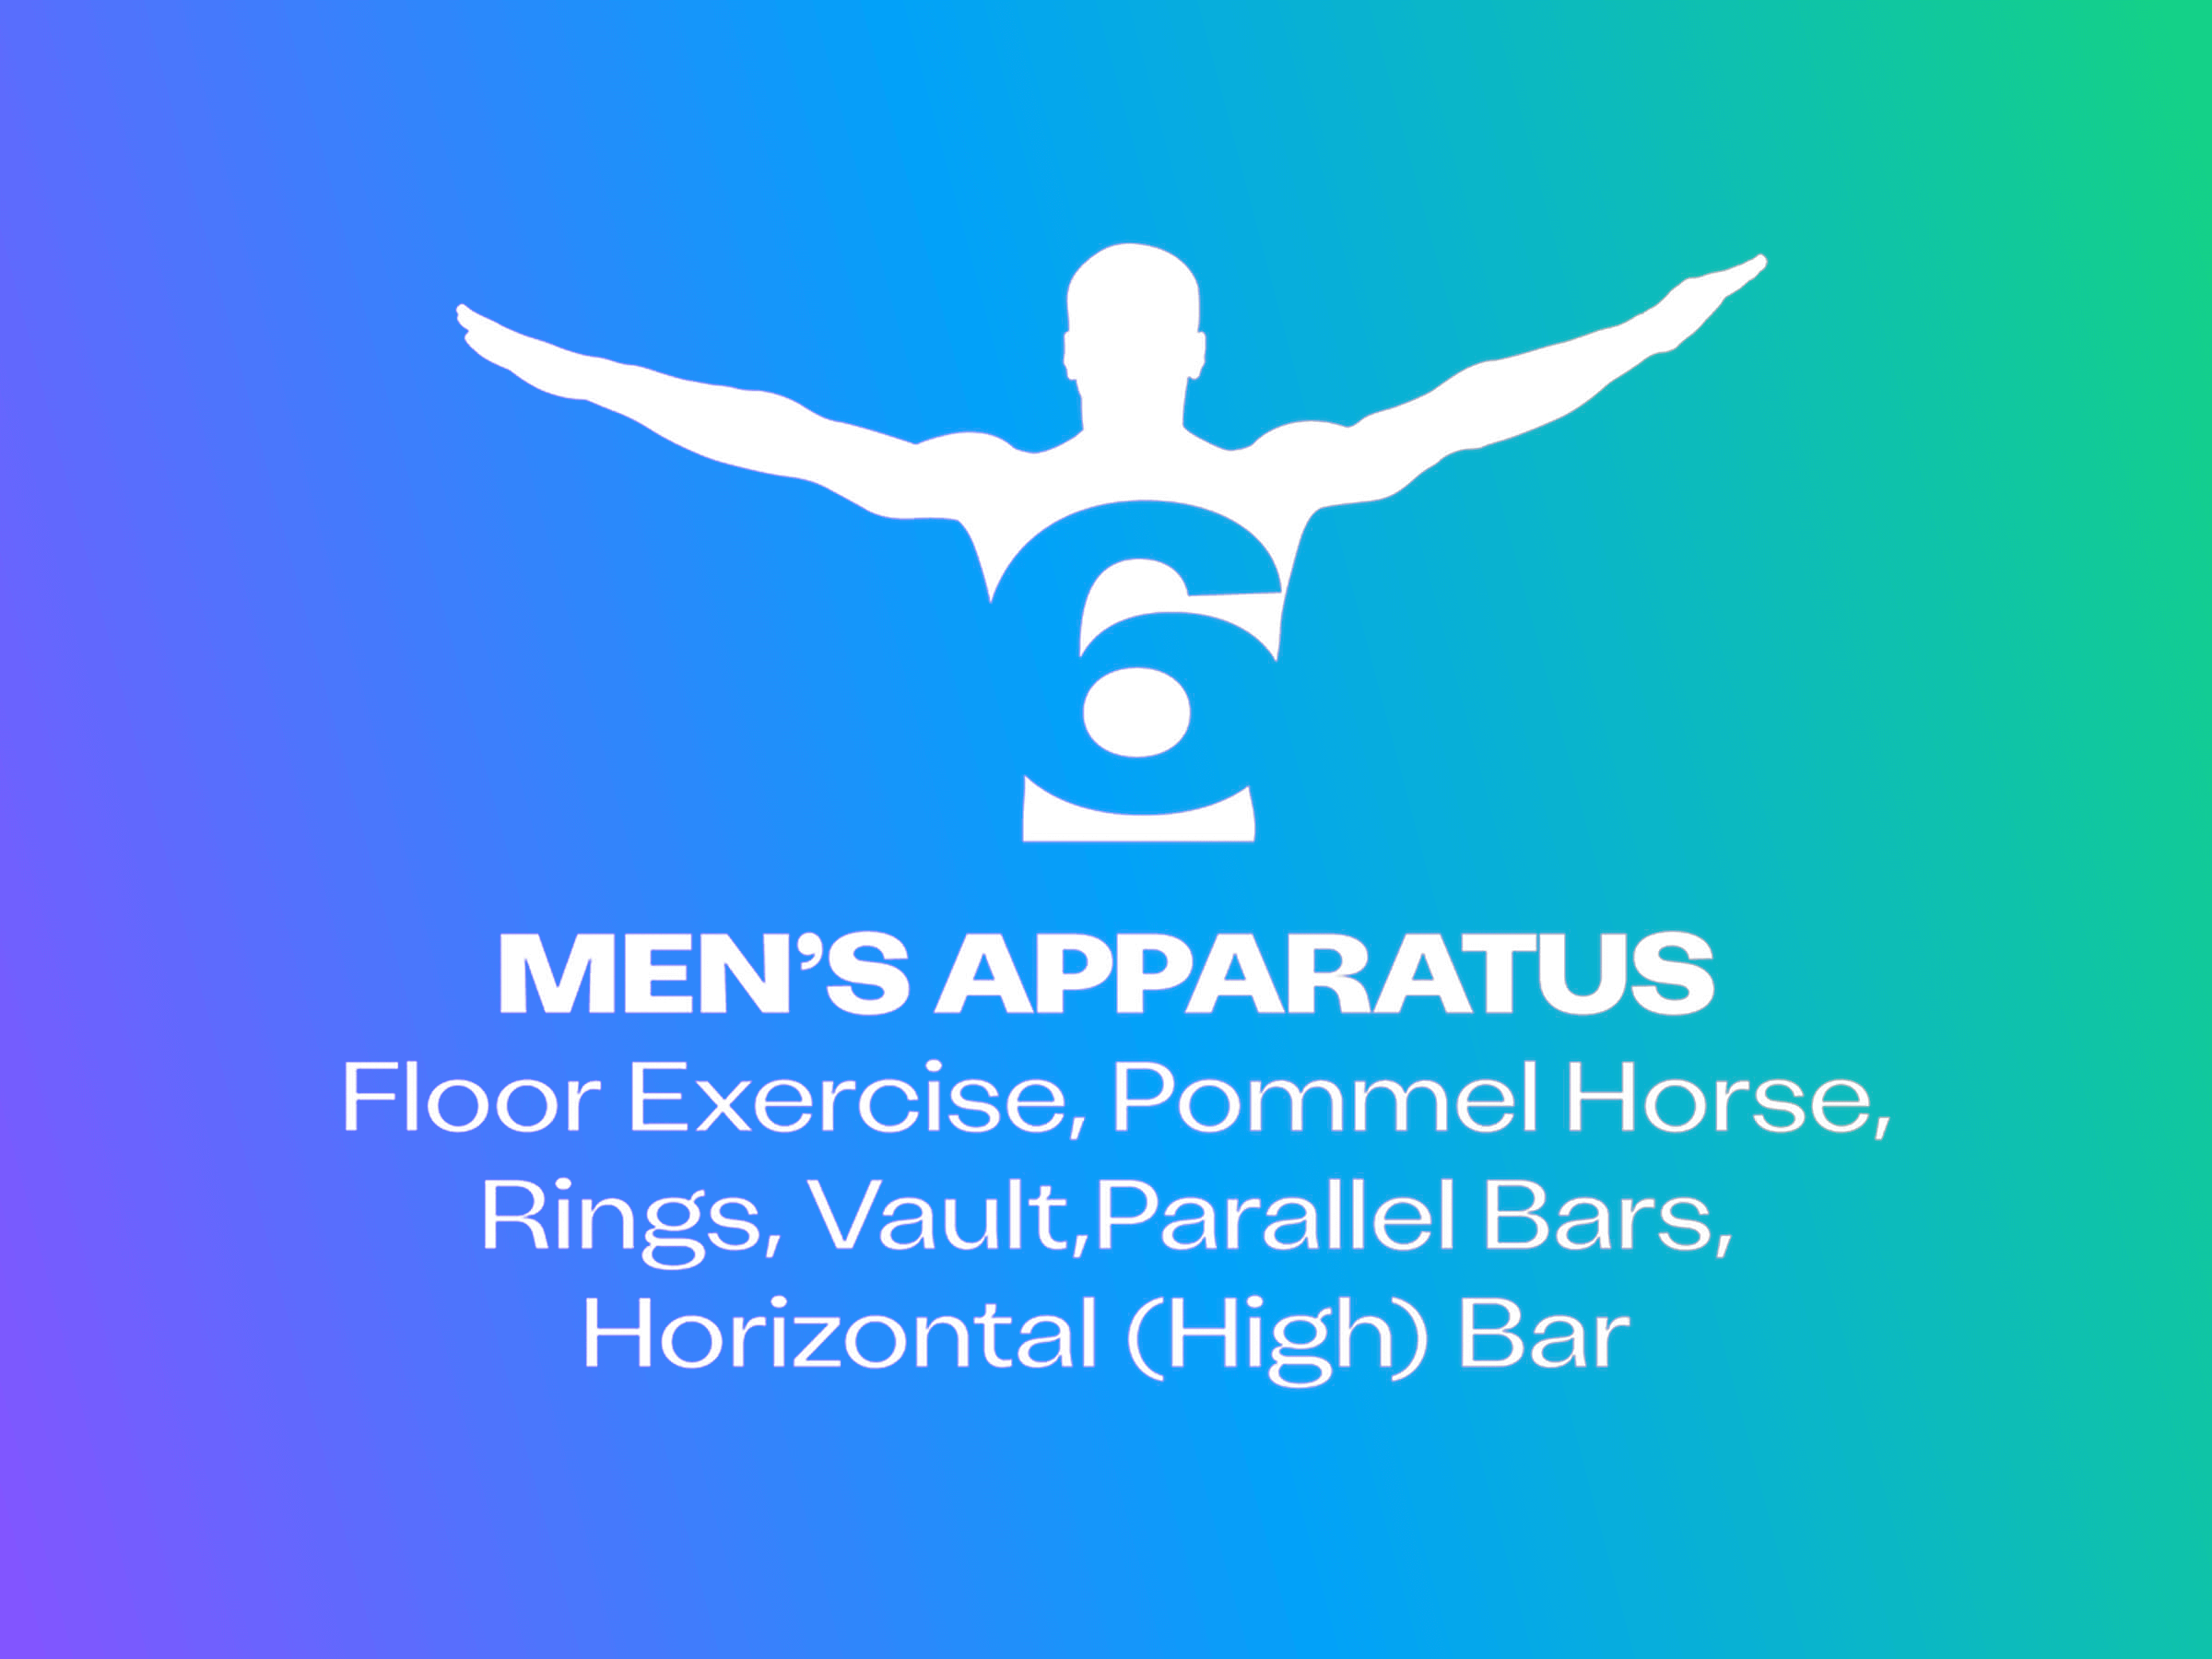 6 men's apparatus